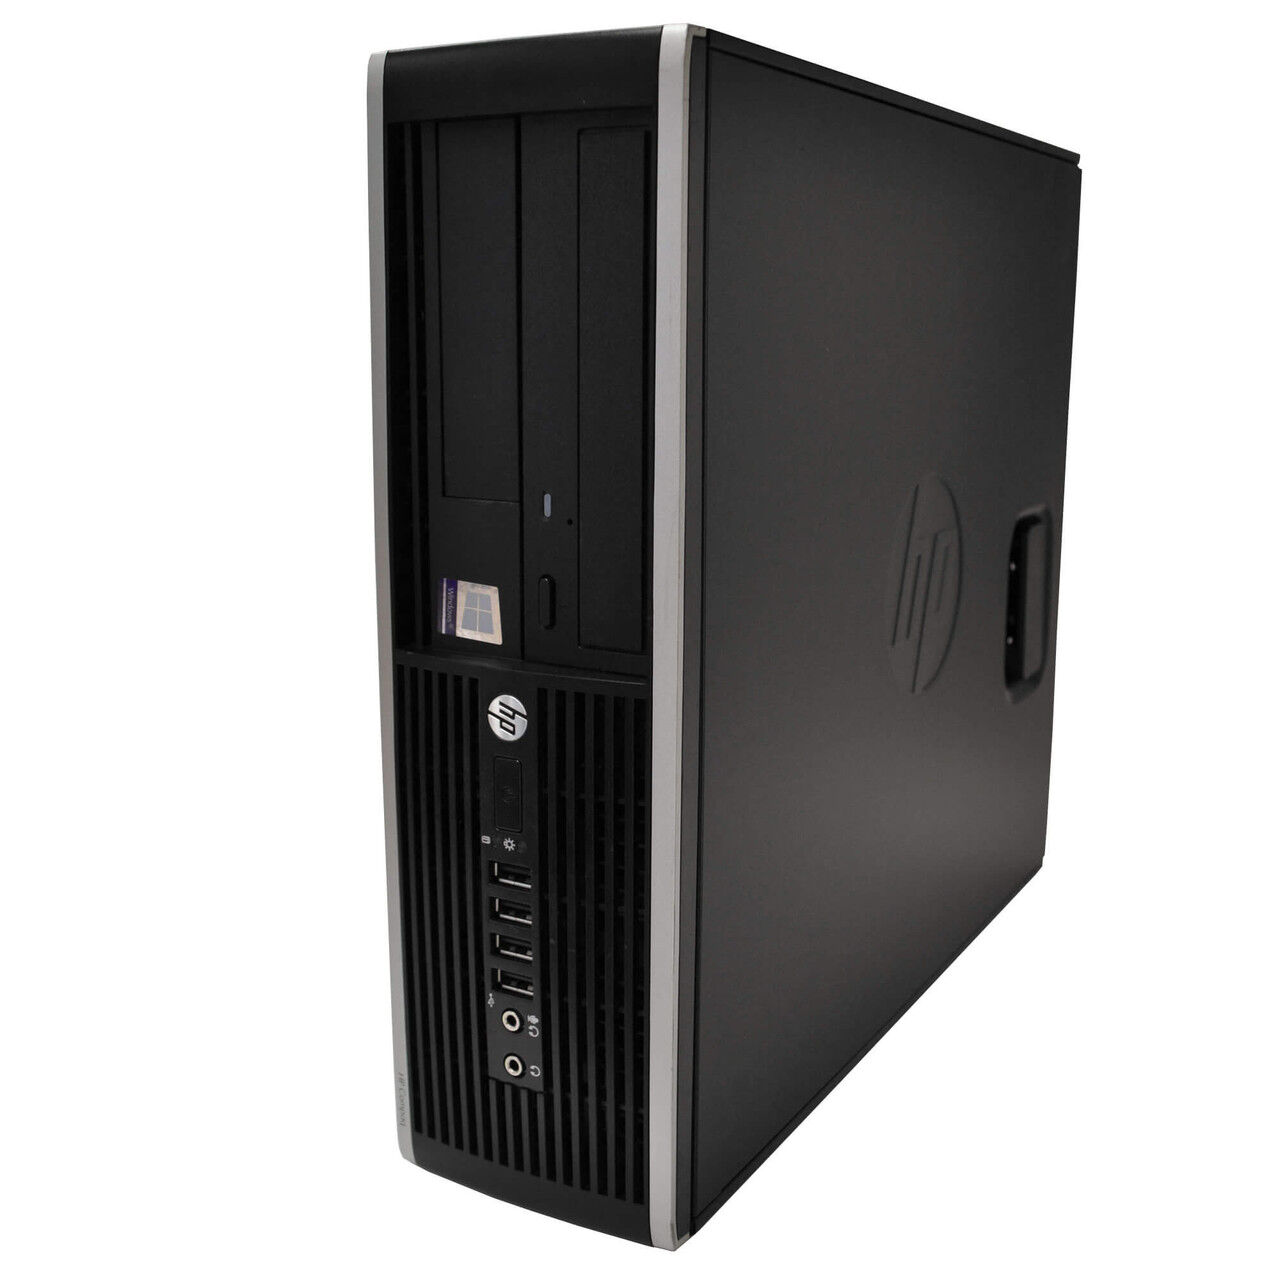 HP 6200 Pro Desktop Computer: Intel Core i3 (2nd Gen), Windows 10, WiFi